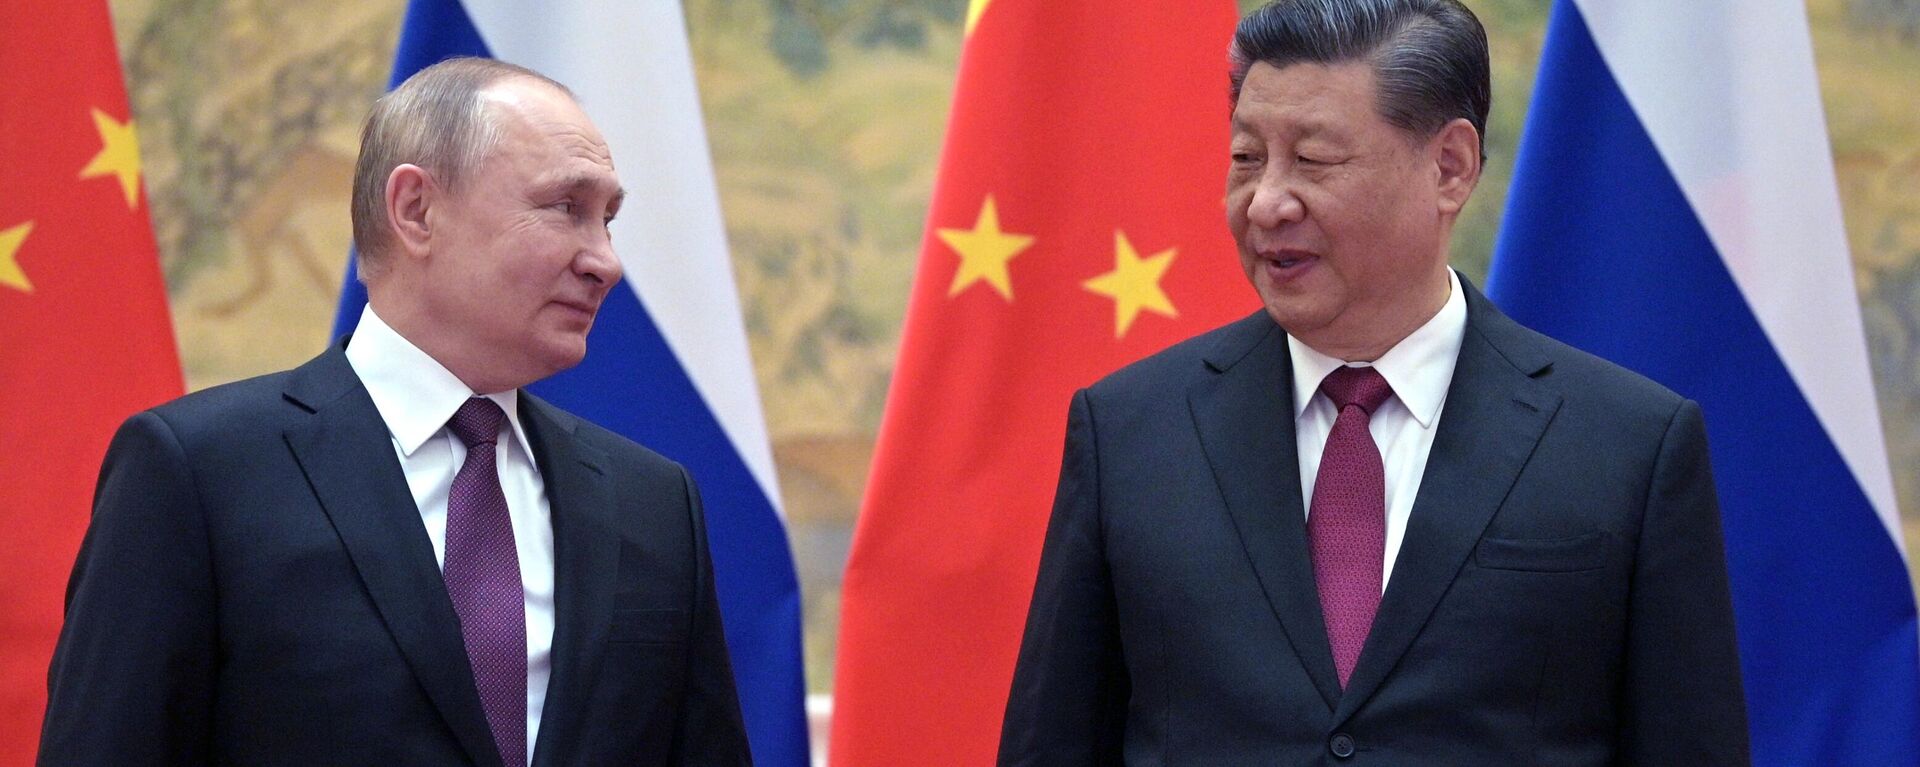 Президент России Владимир Путин и председатель КНР Си Цзиньпин подписали совместное заявление  - Sputnik Абхазия, 1920, 04.02.2022